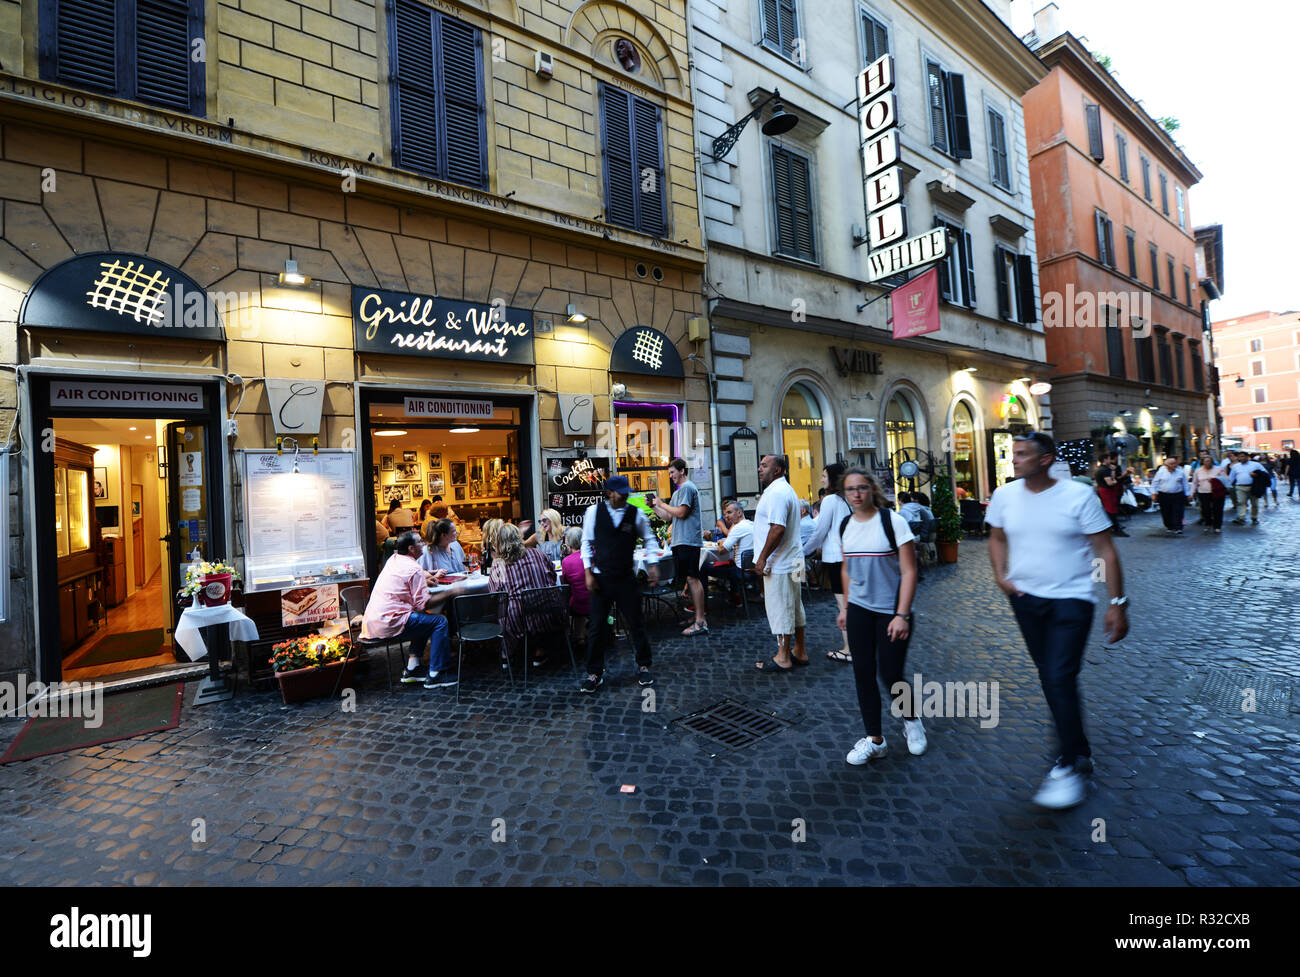 The Grill & Wine restaurant on Via In Arcione in Rome. Stock Photo